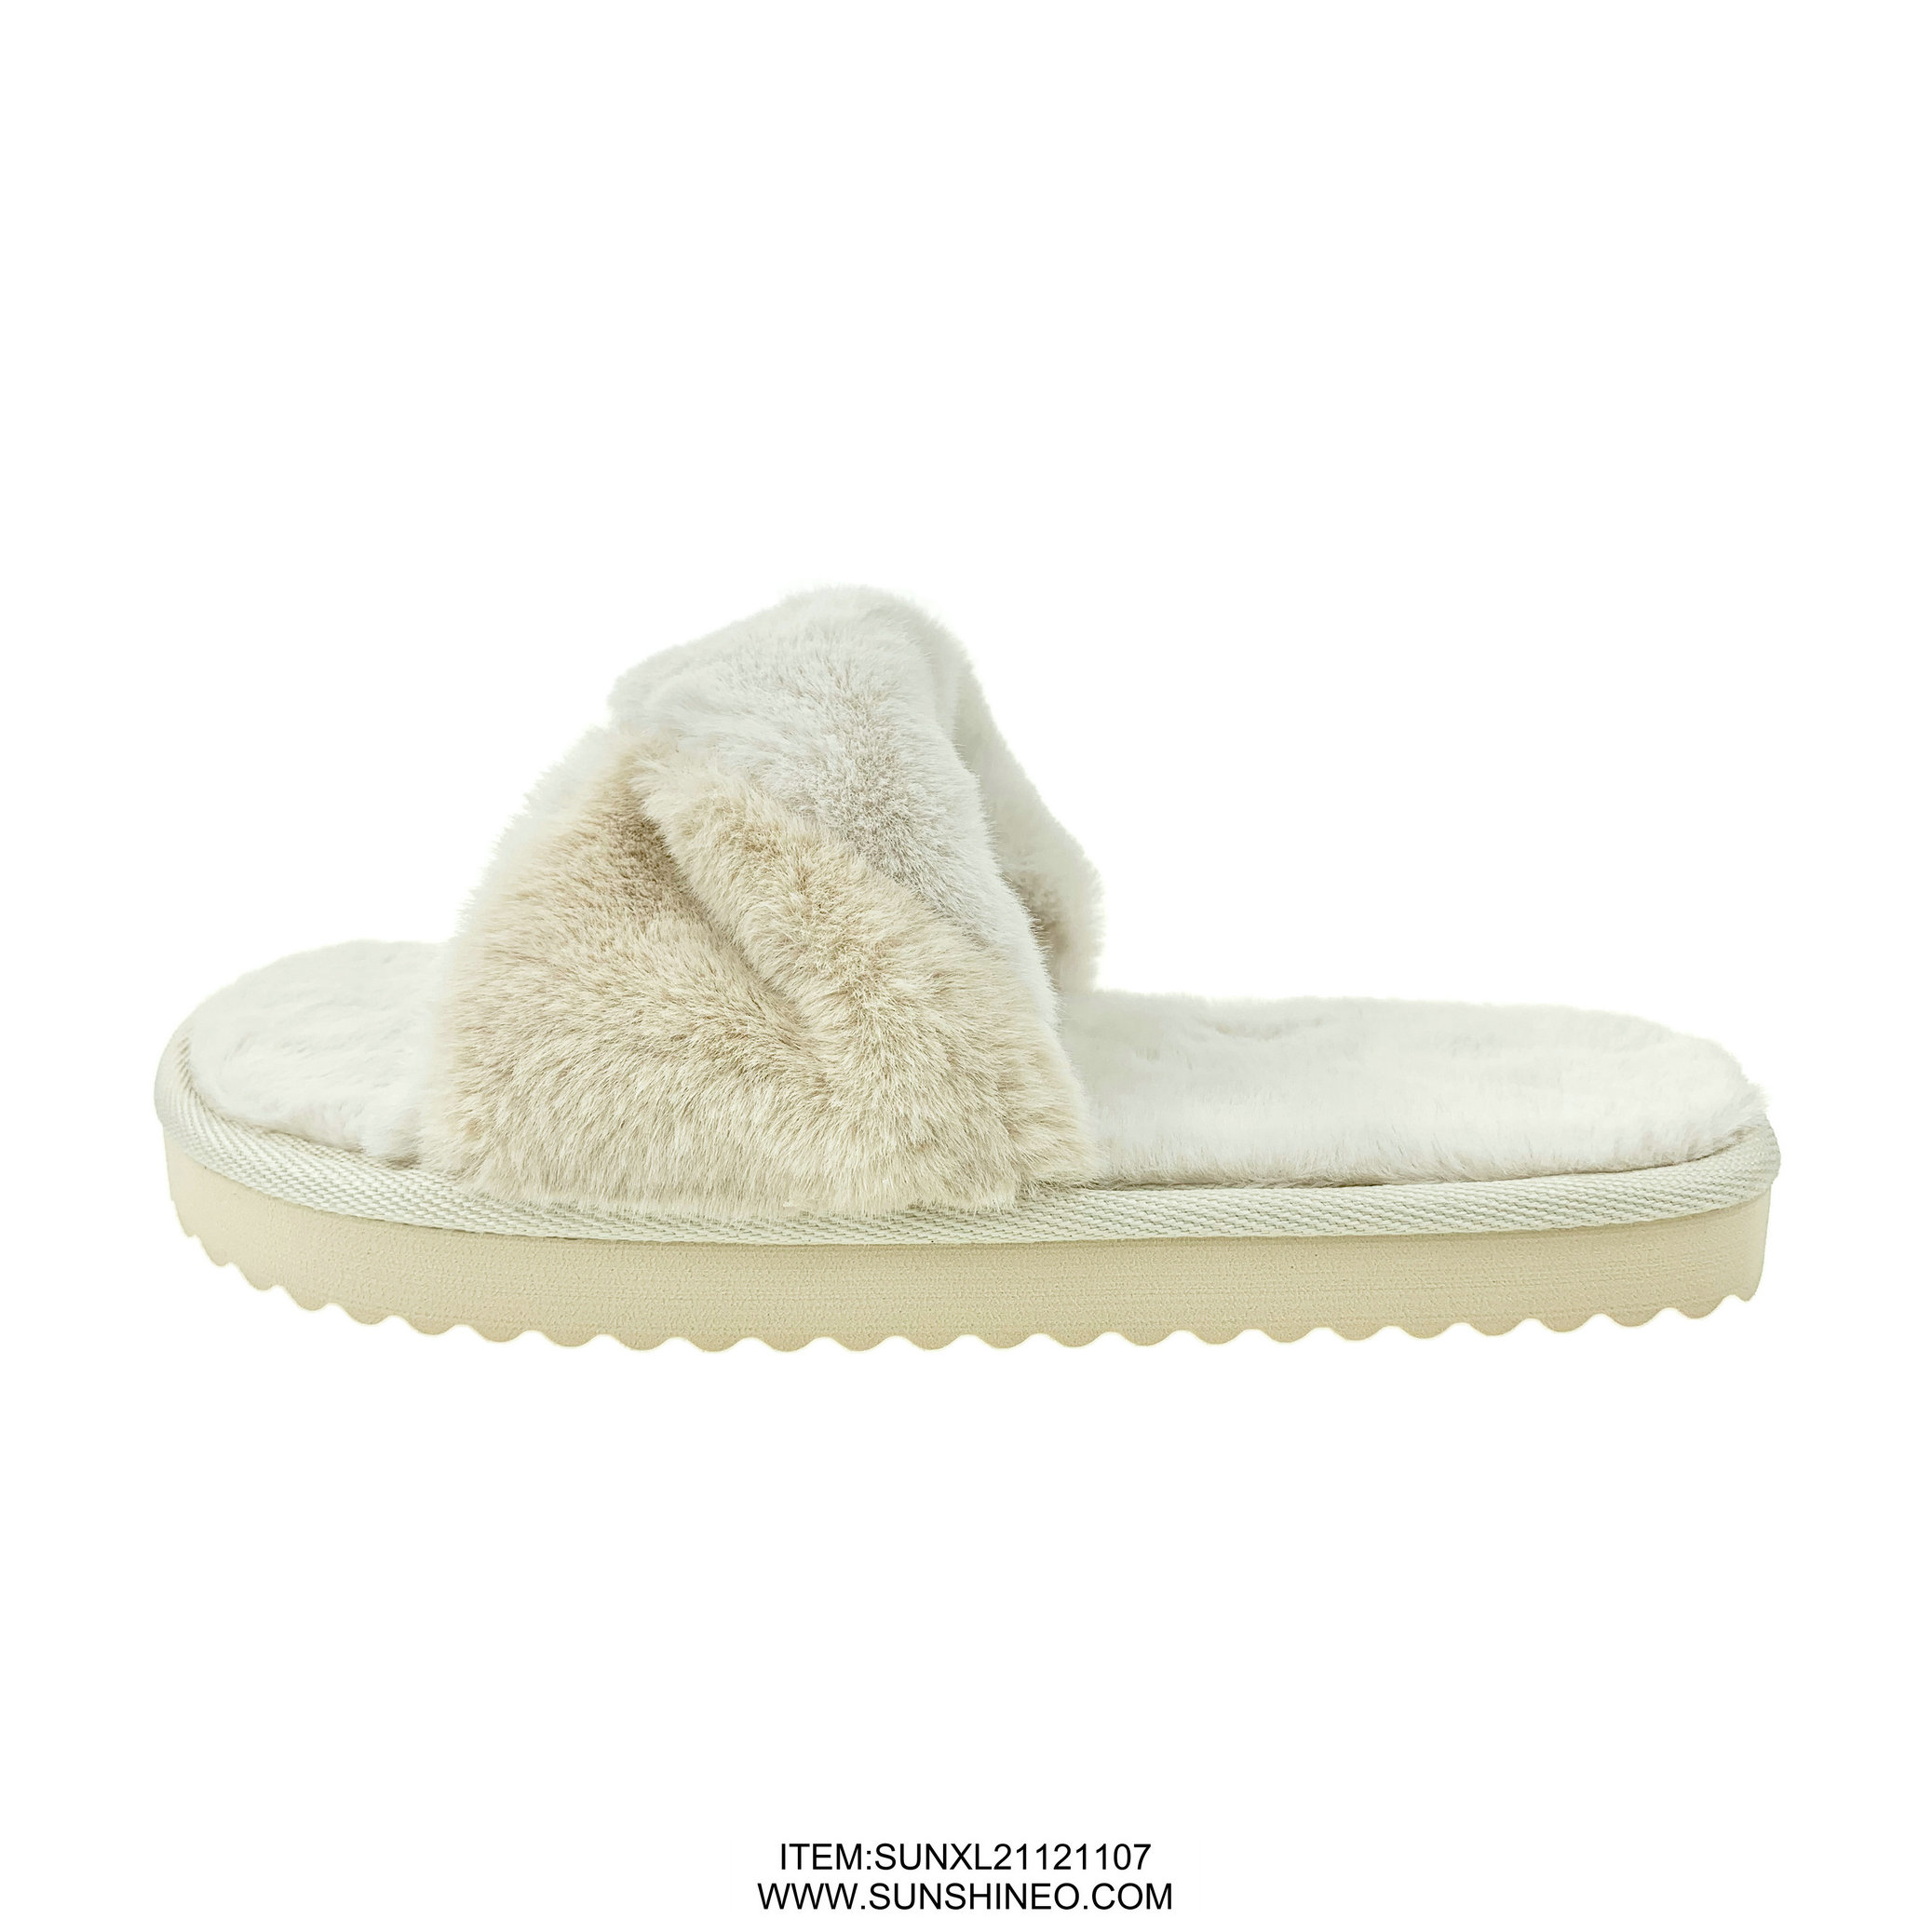 SUNXL21121107 fur flip flop sandals winter slippers